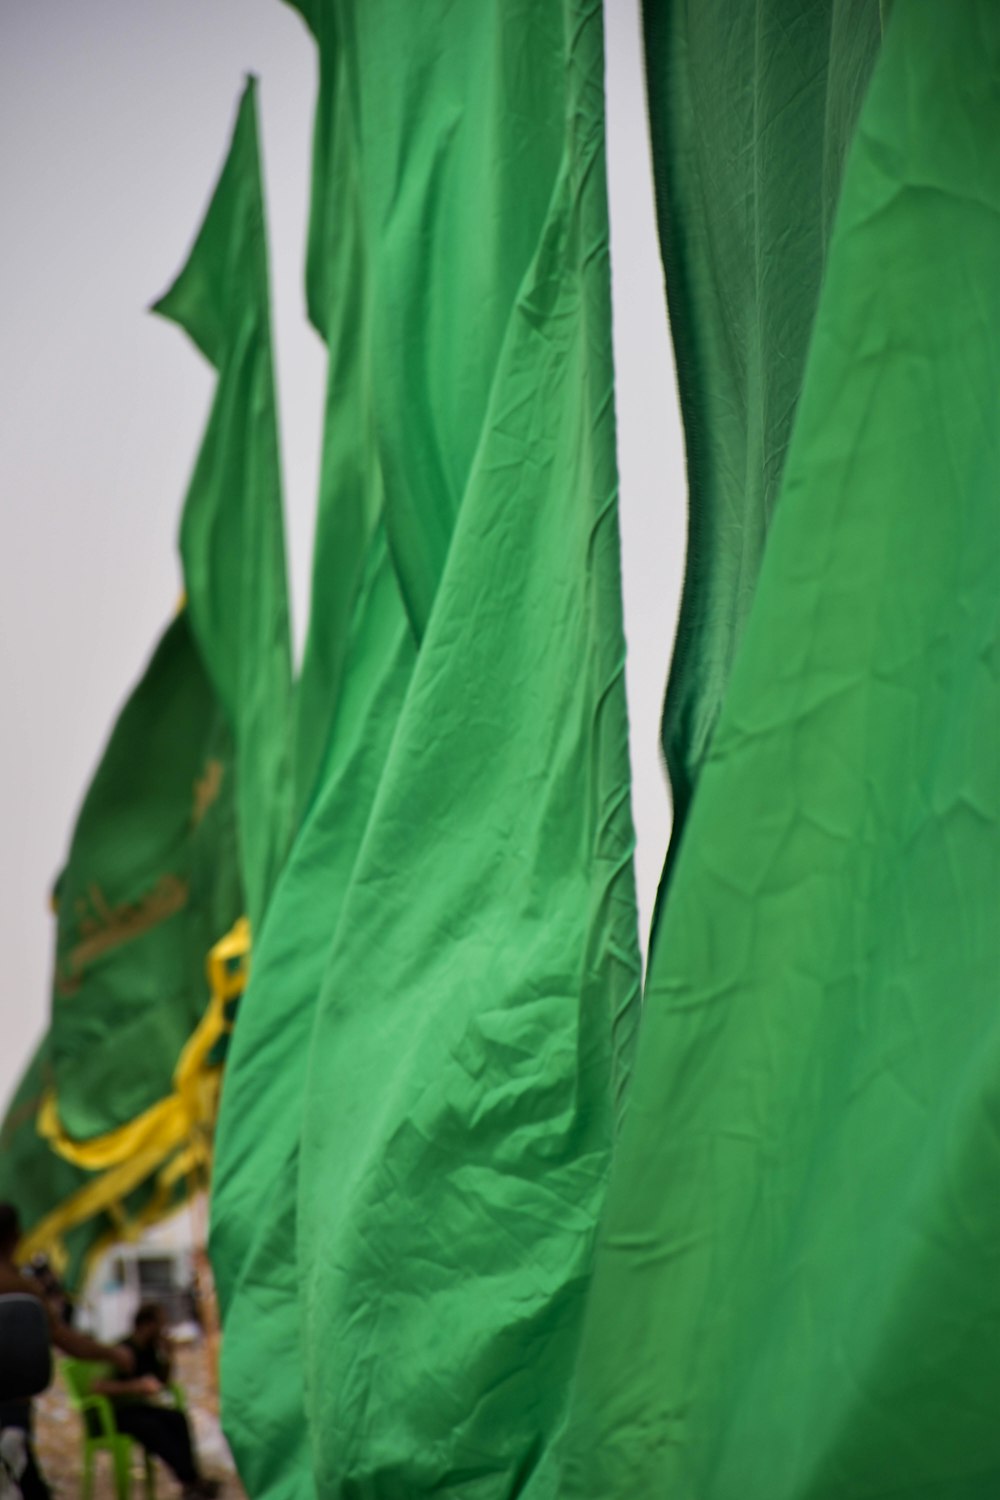 Un grupo de banderas verdes están en el viento